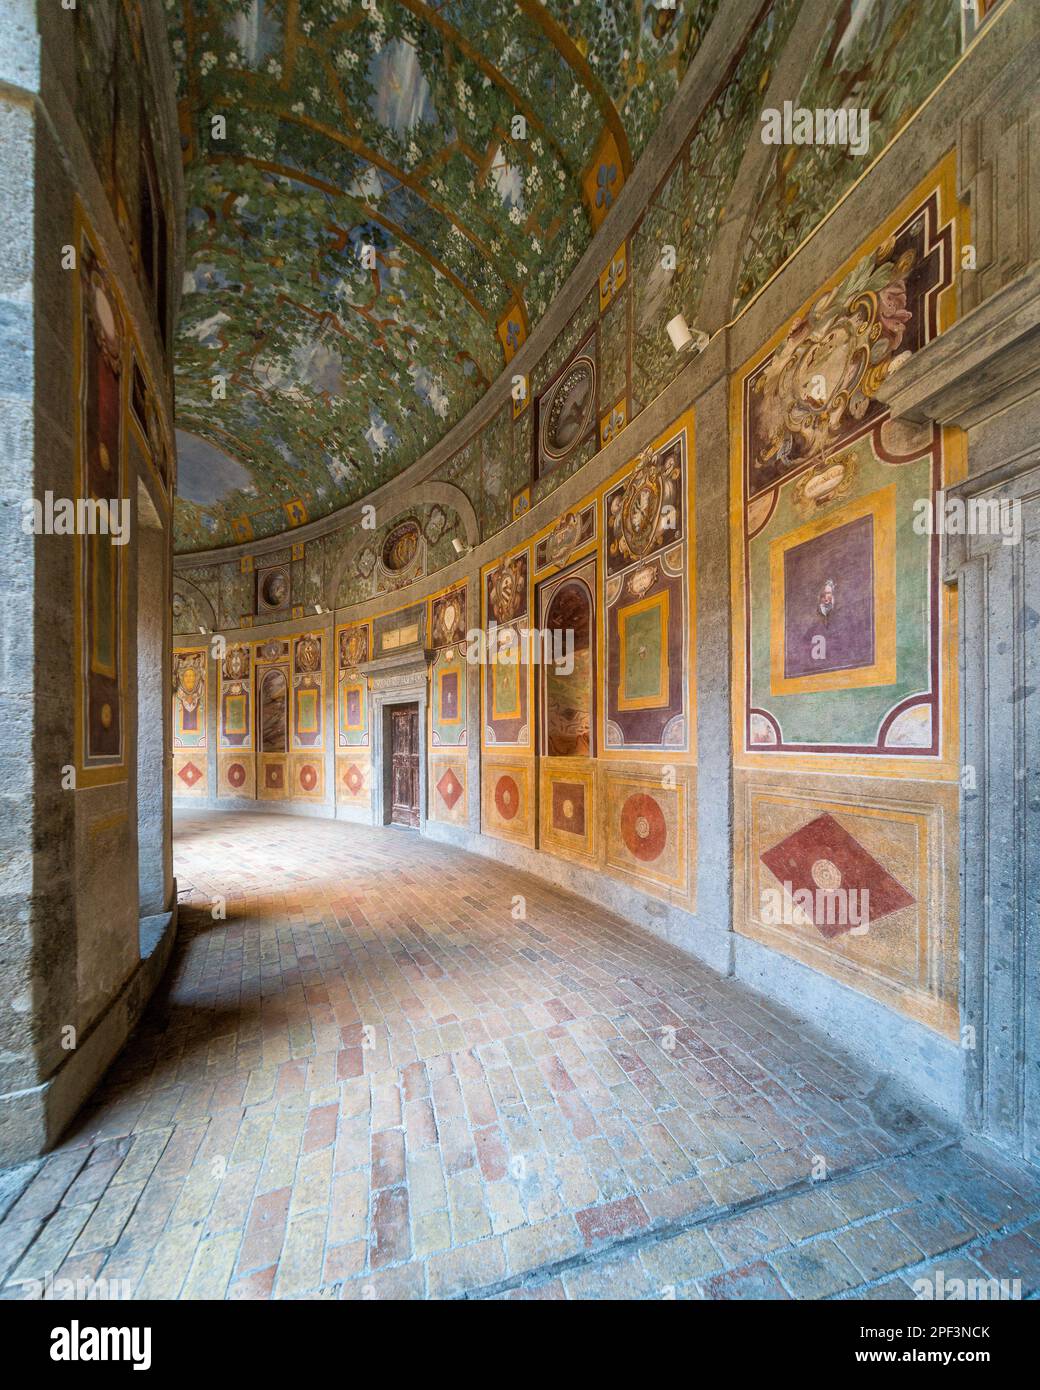 Magnifique voûte de fresques au Palais Farnese à Caprarola, province de Viterbo, Latium, Italie. Mars 02-2020 Banque D'Images